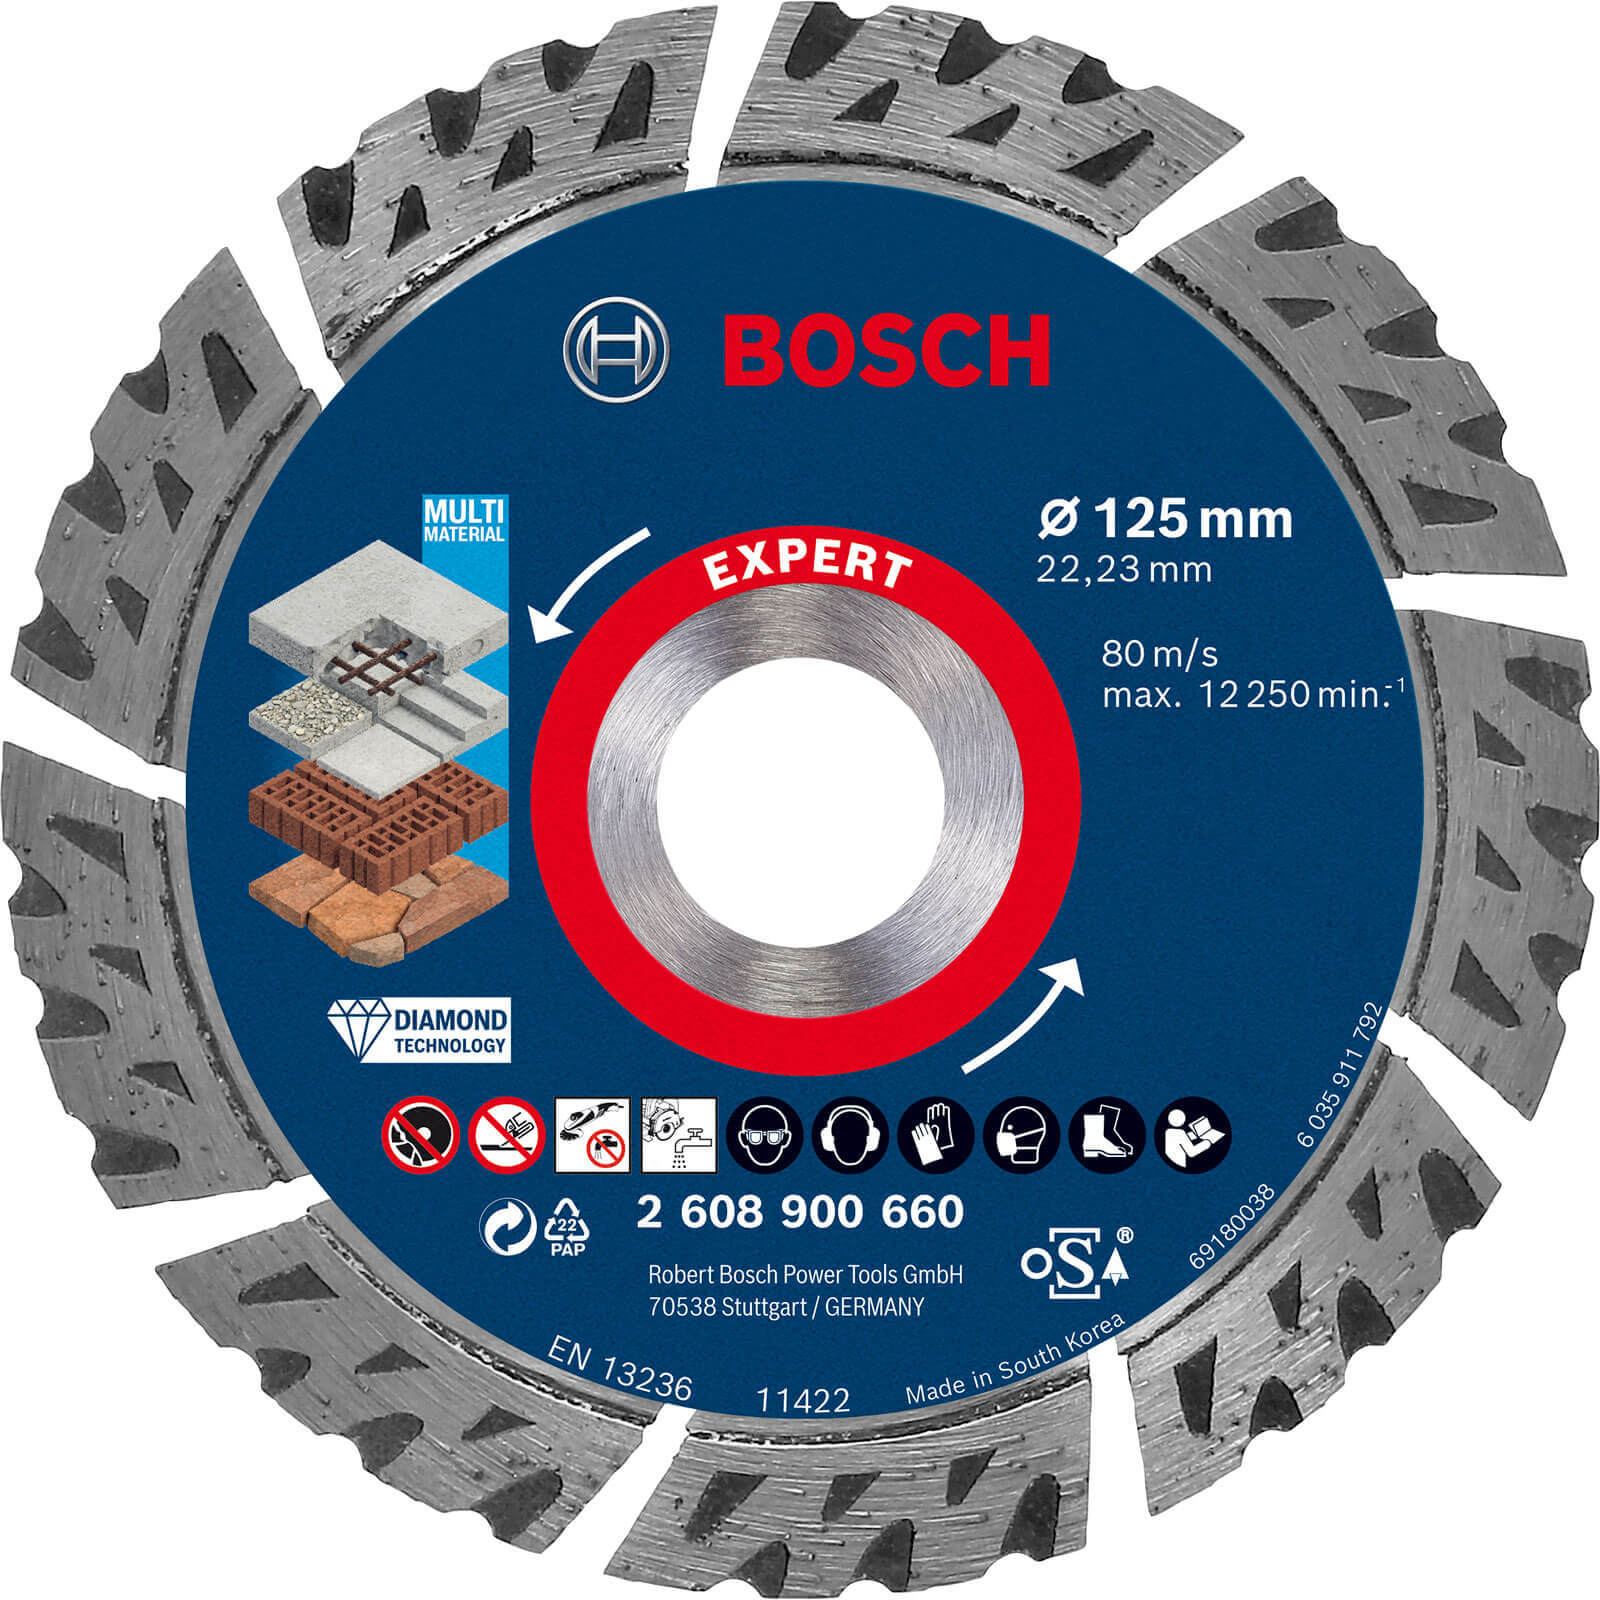 Photos - Cutting Disc Bosch Expert Multi Material Diamond  125mm 2.2mm 22mm 26089006 